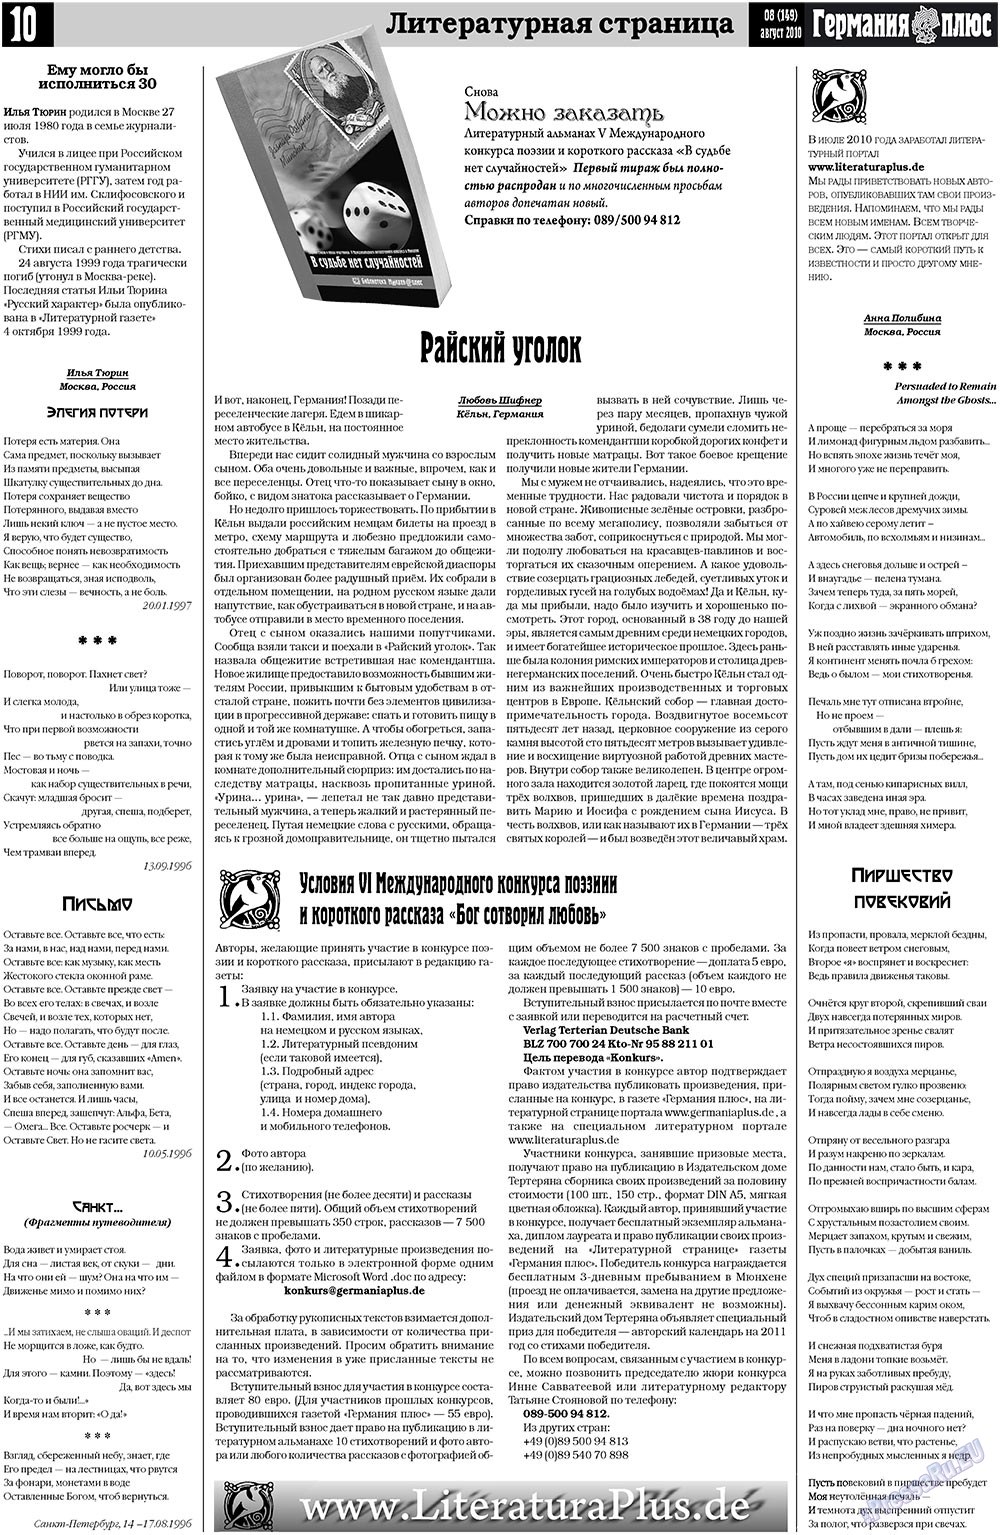 Германия плюс, газета. 2010 №8 стр.10